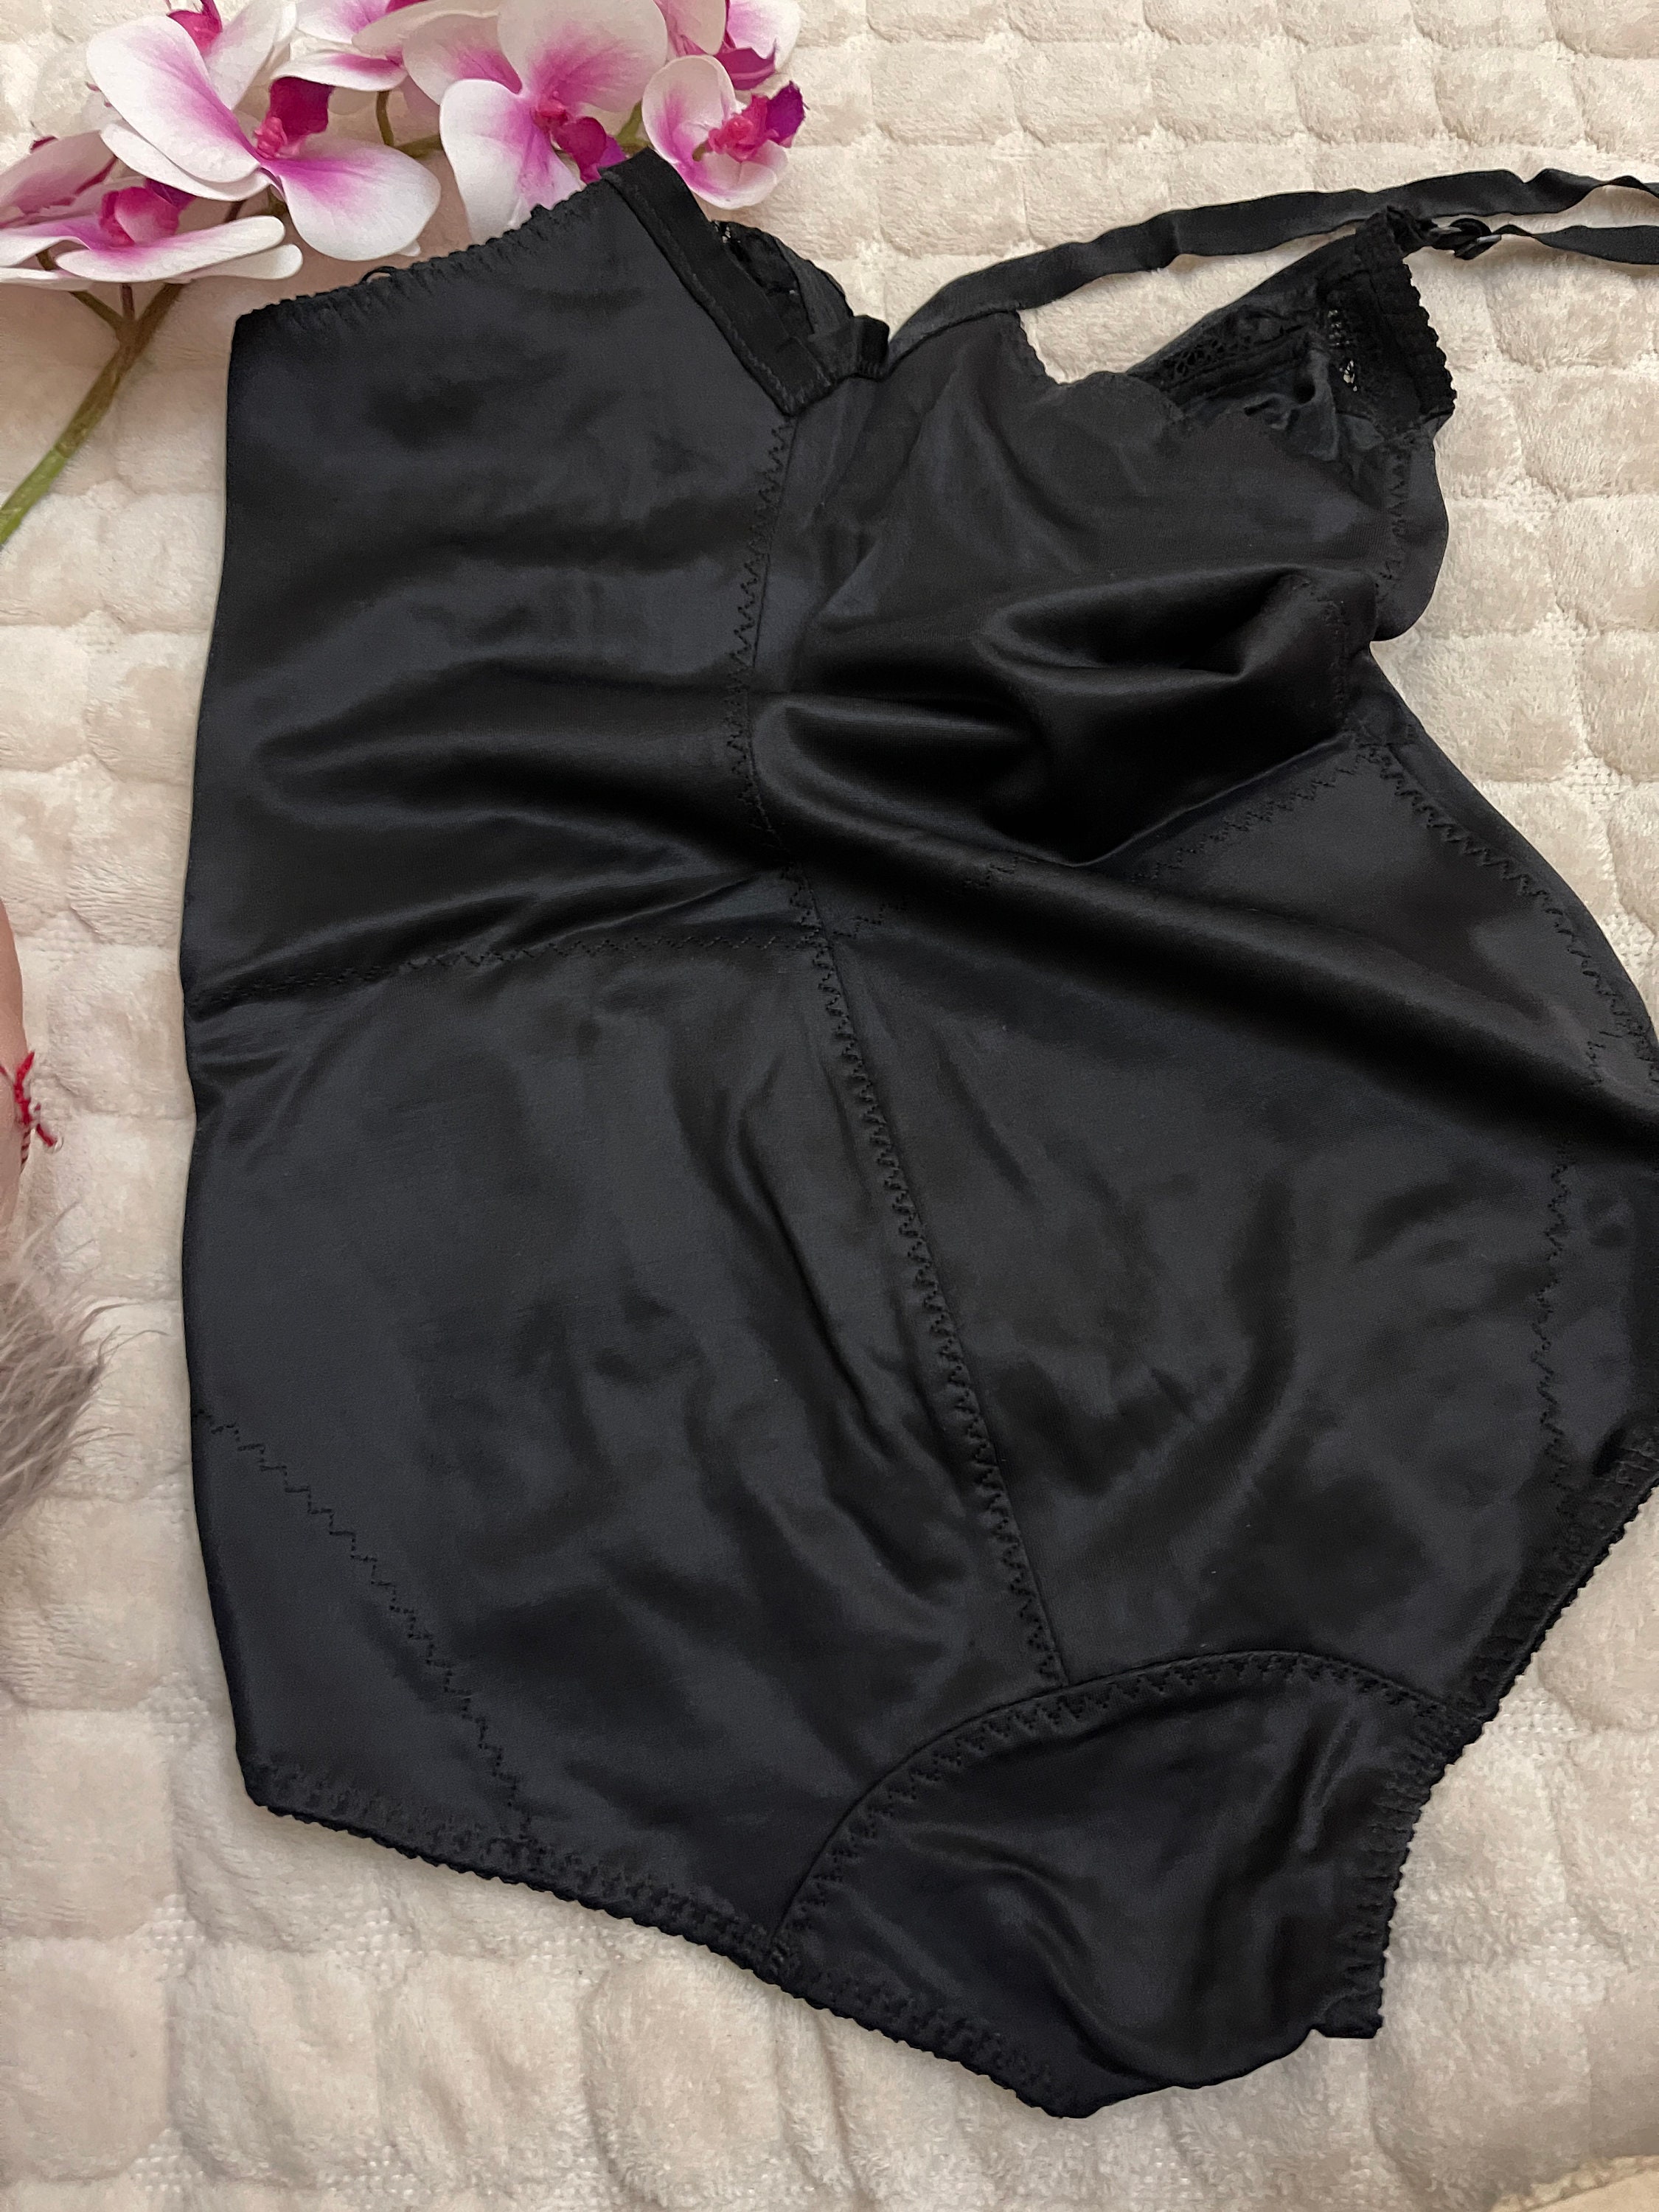 Lunaria black Bodysuit shapewear padded underwired size it6c | Etsy